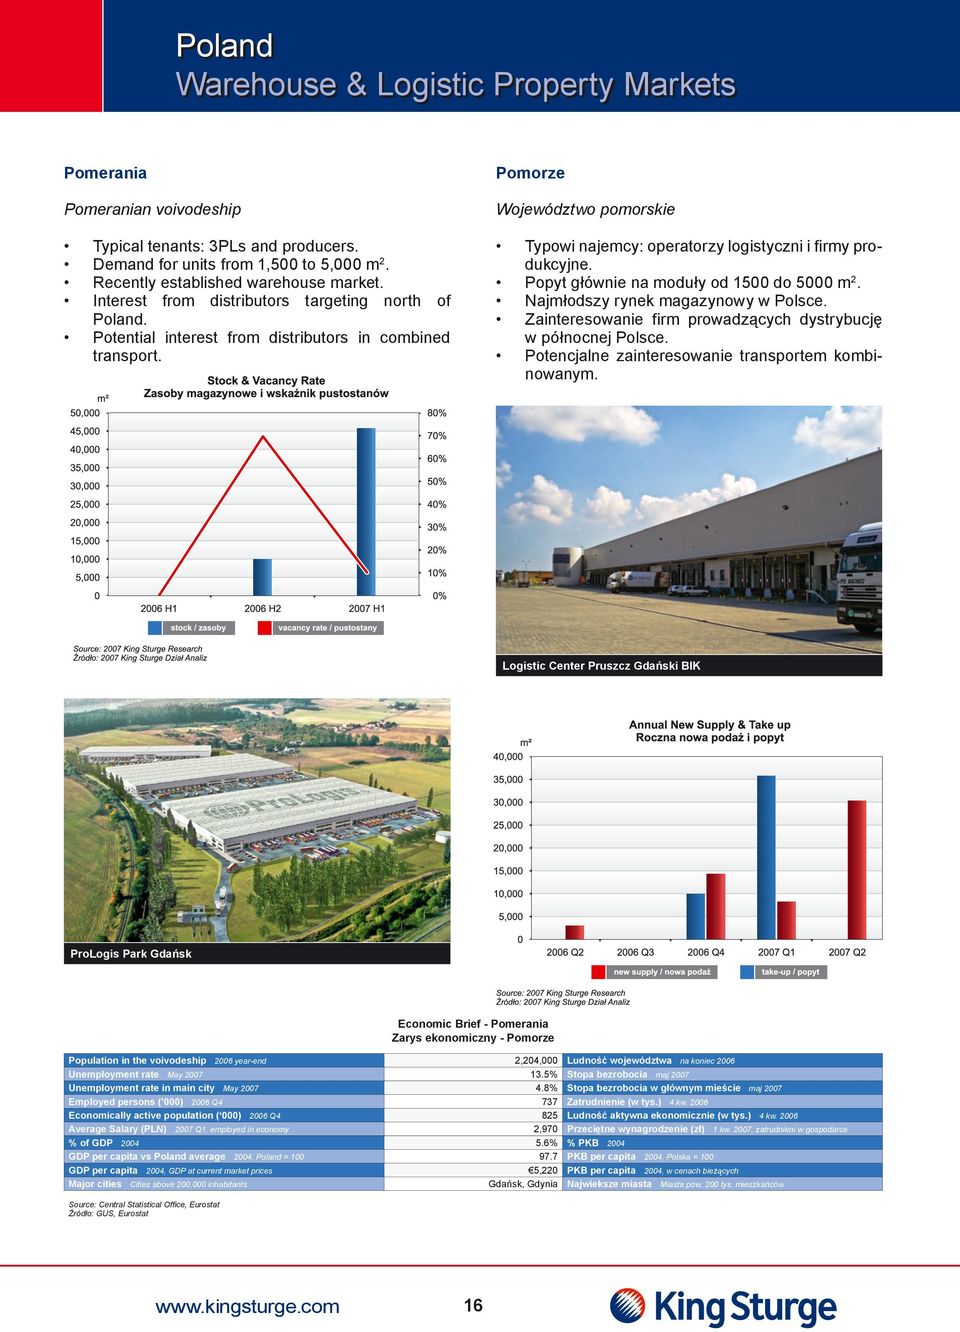 Typowi najemcy: operatorzy logistyczni i firmy produkcyjne. Popyt głównie na moduły od 1500 do 5000 m2. Najmłodszy rynek magazynowy w Polsce.